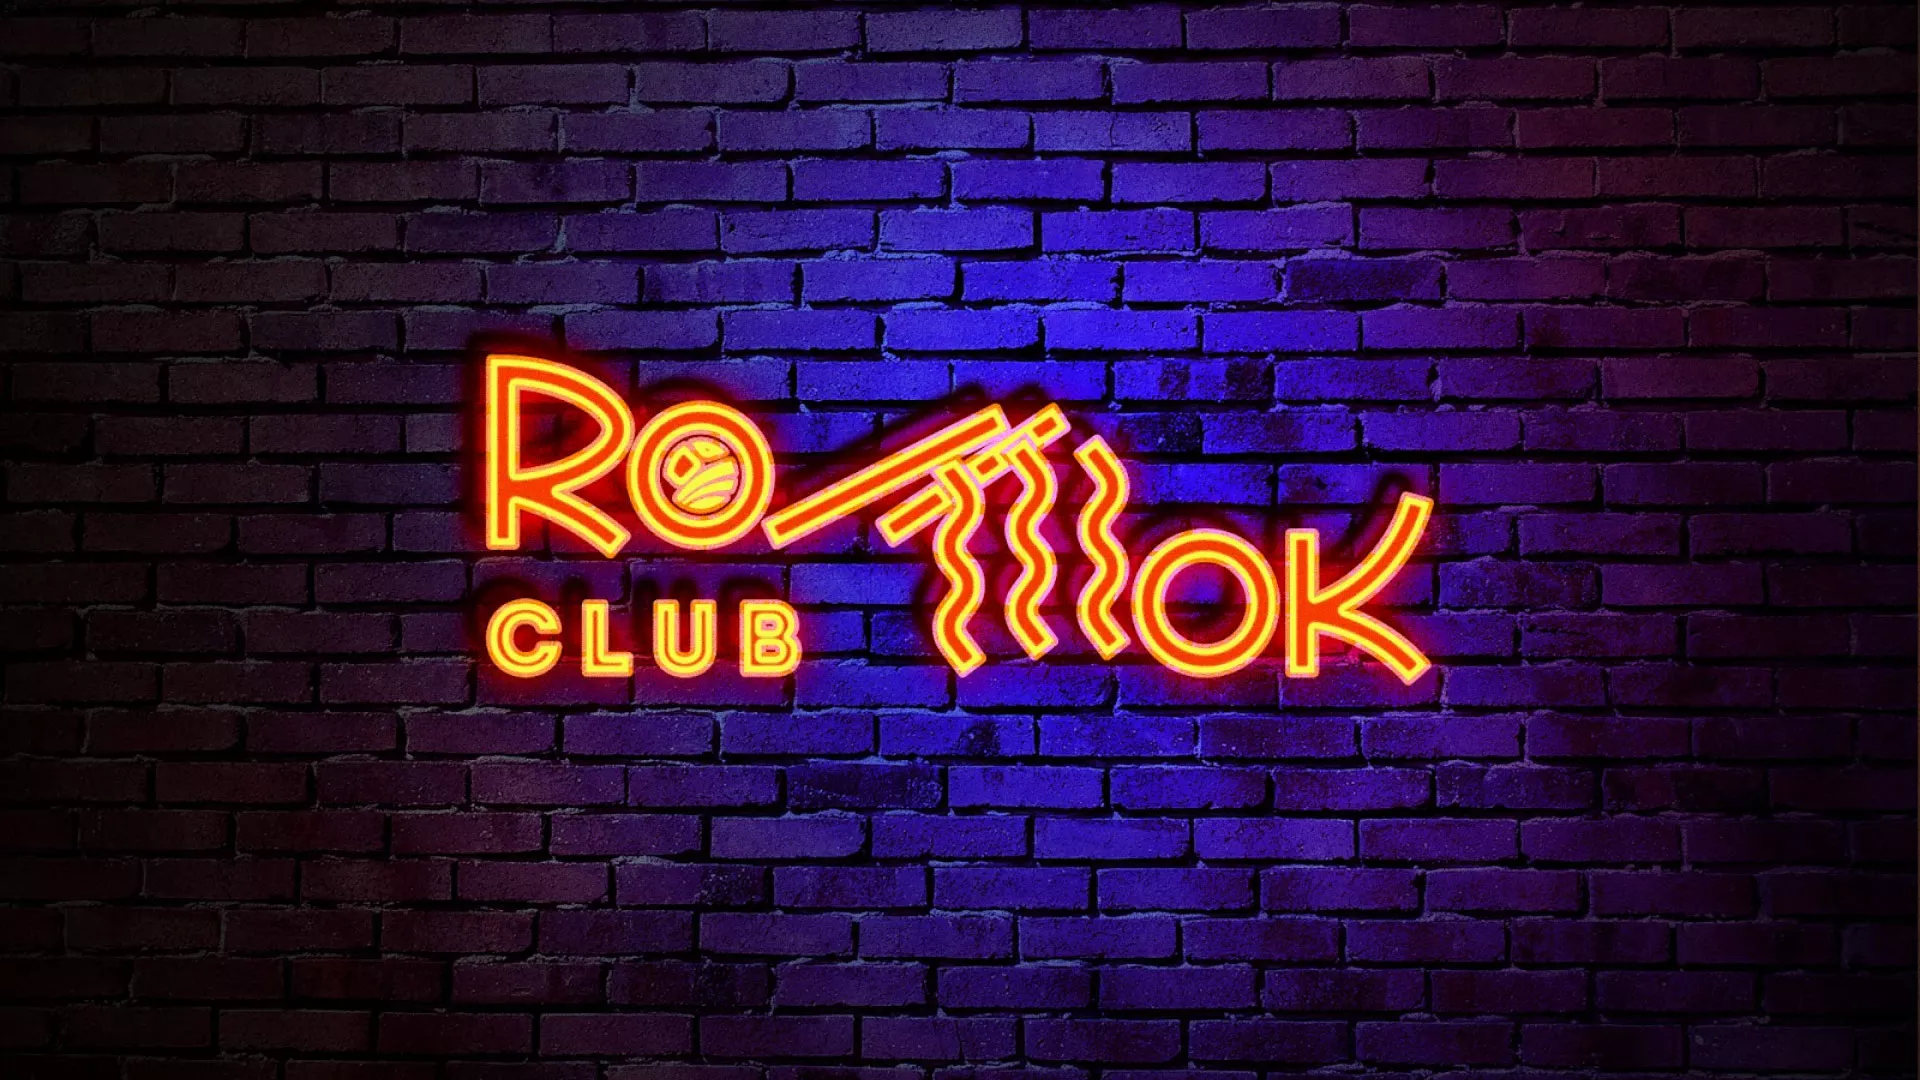 Разработка интерьерной вывески суши-бара «Roll Wok Club» в Грязях